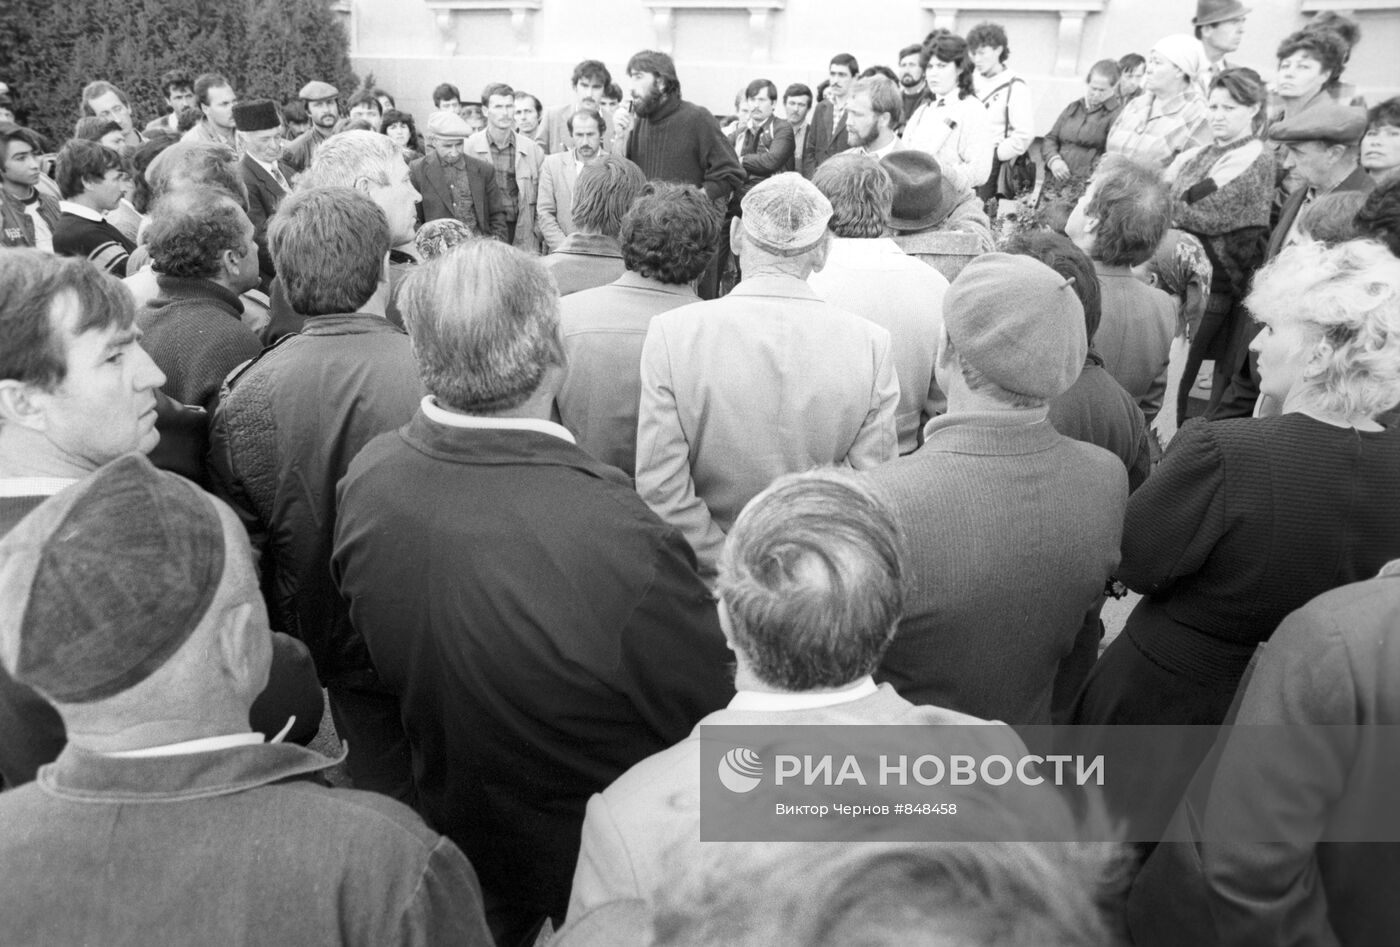 Митинг крымских татар в Симферополе